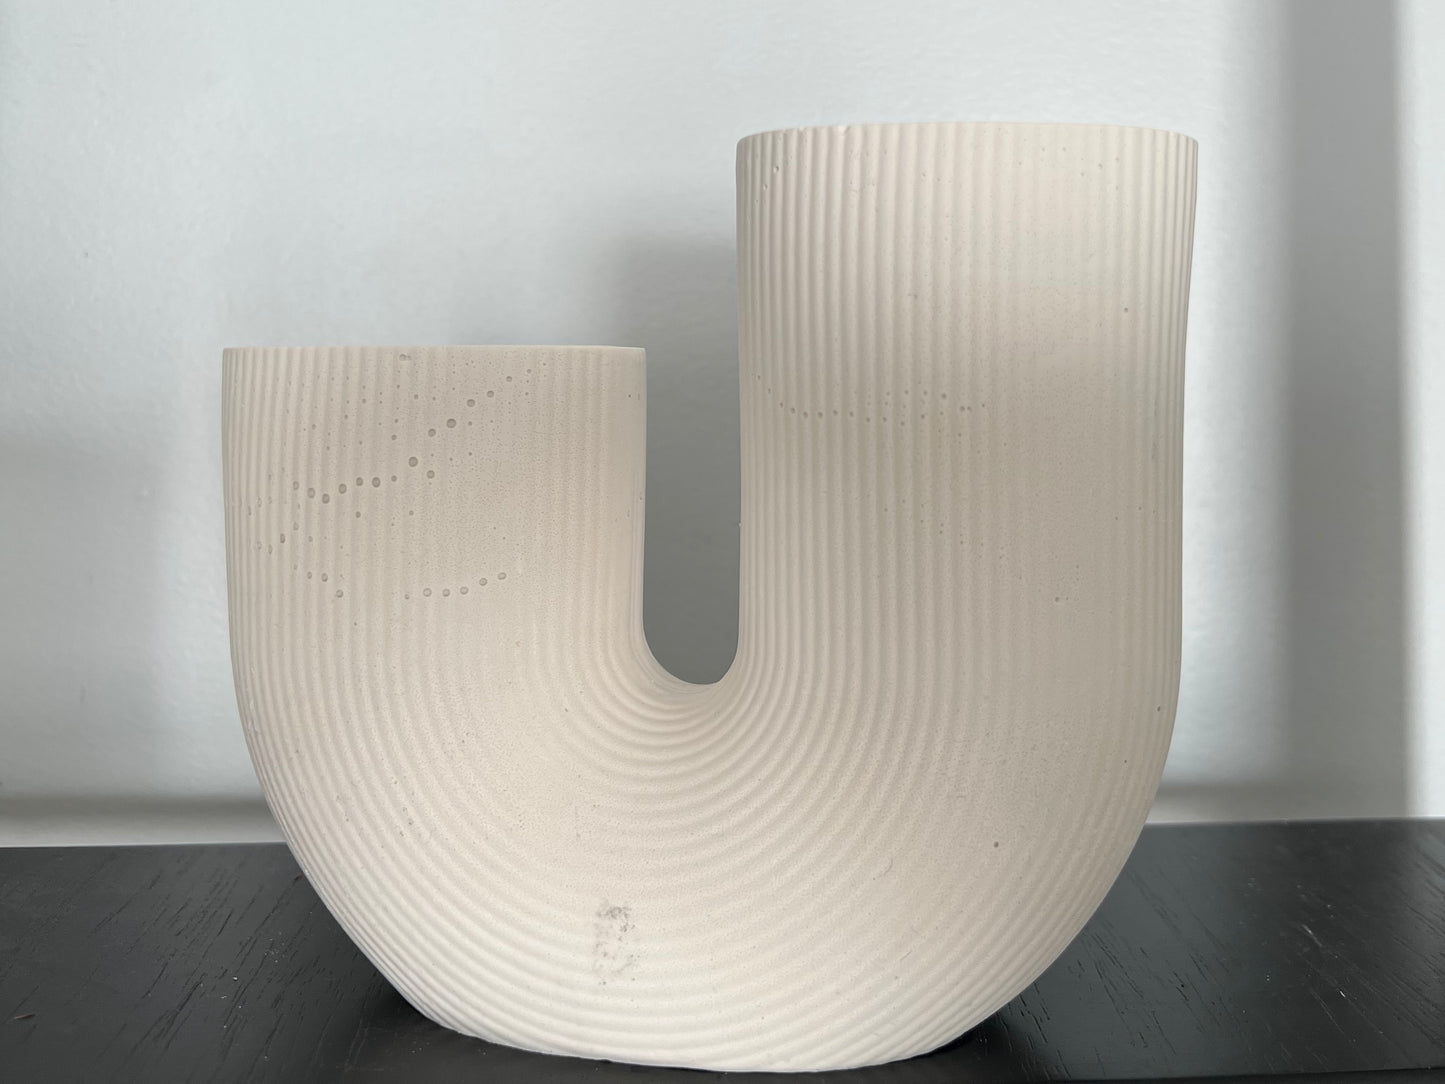 U-shaped vase